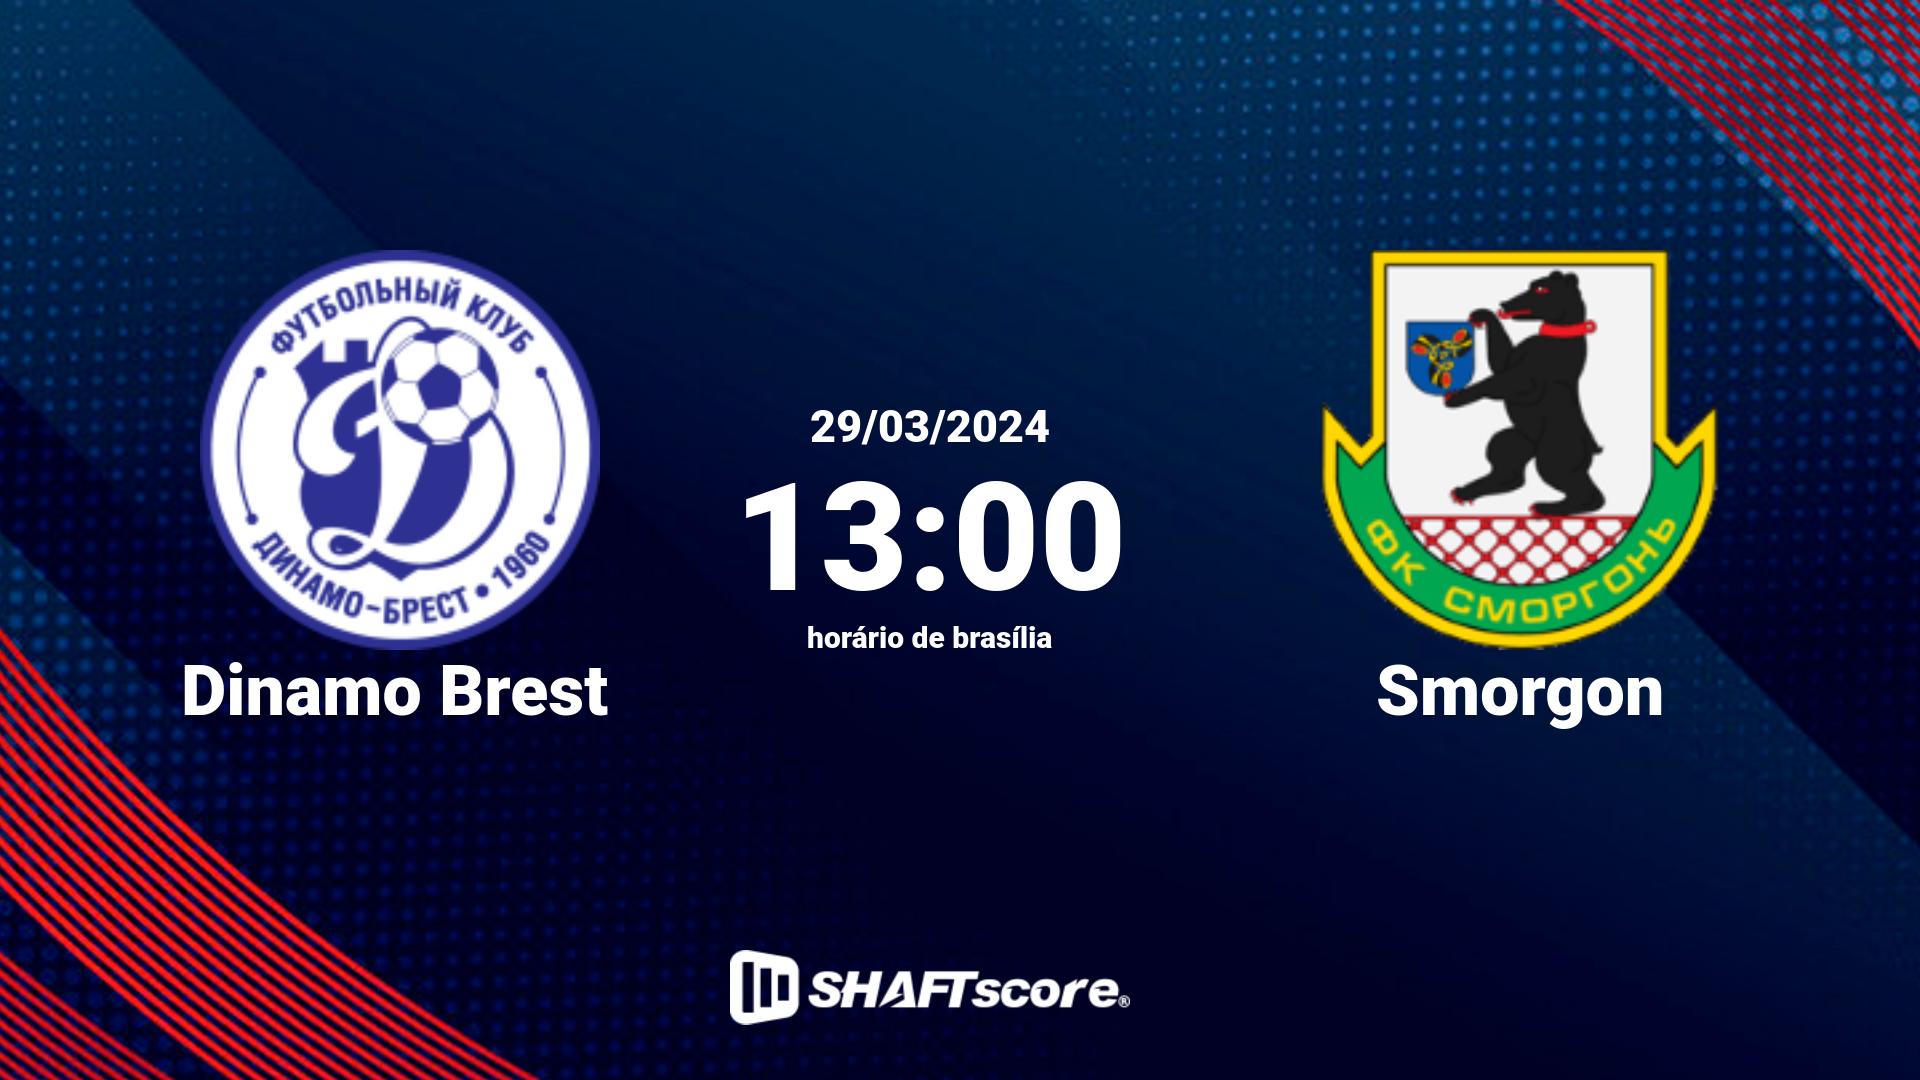 Estatísticas do jogo Dinamo Brest vs Smorgon 29.03 13:00